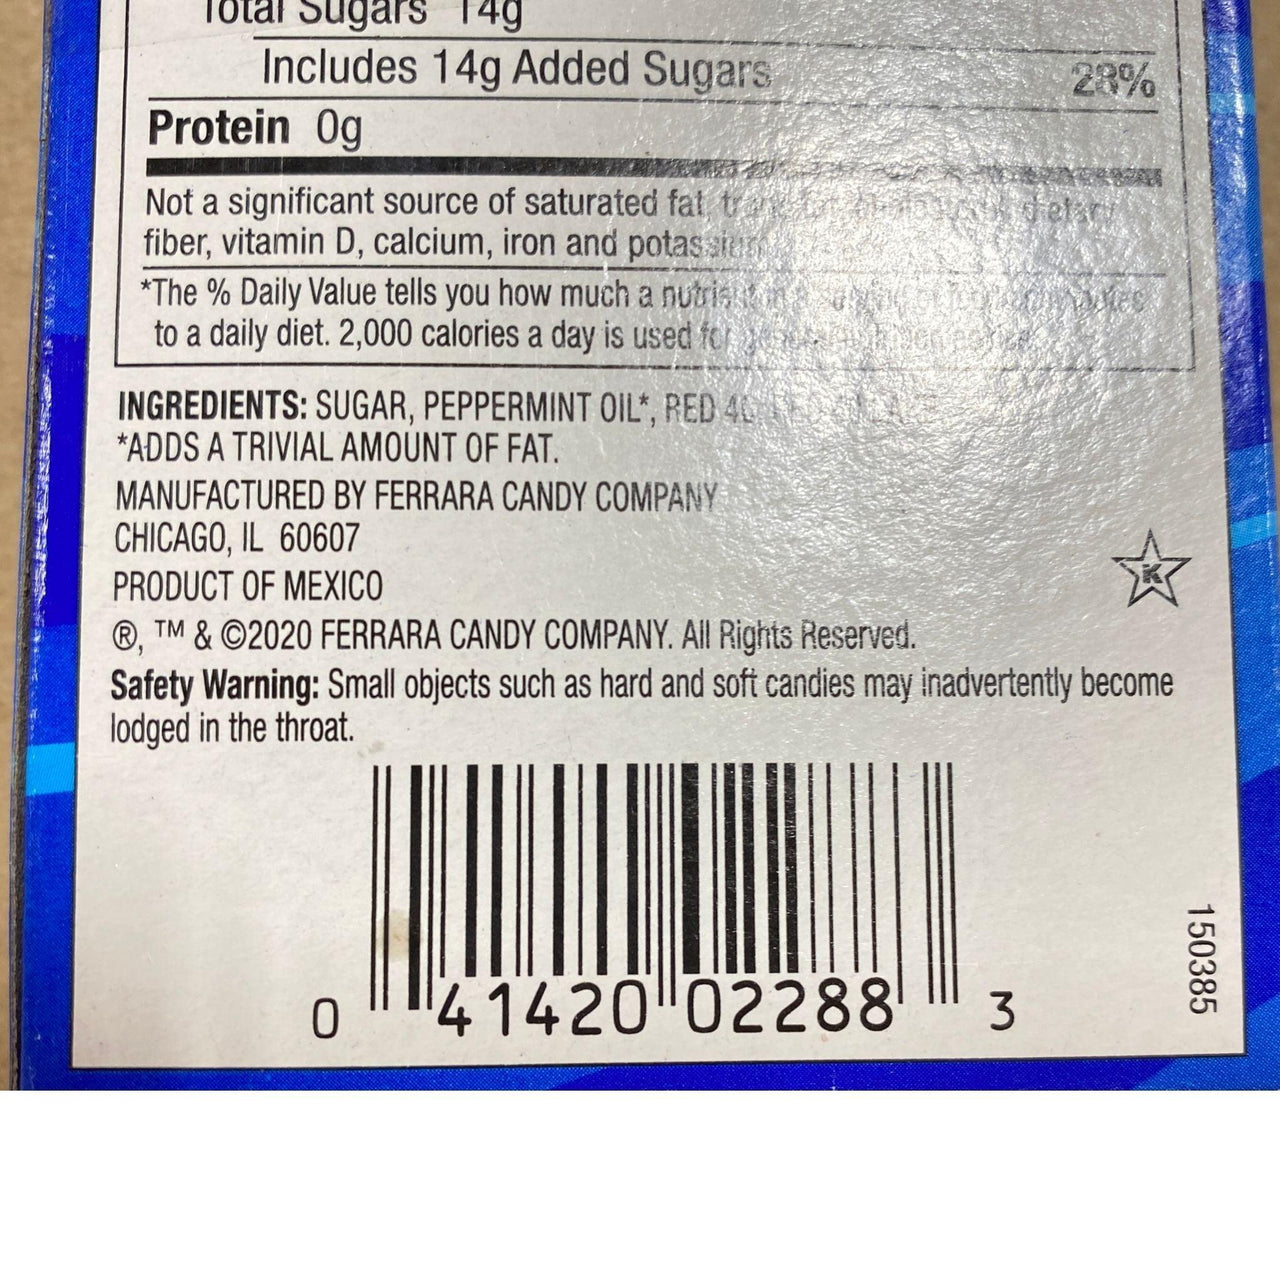 Soft Mint Candy Peppermint Stir Sticks (120 Pcs Lot ) - Discount Wholesalers Inc